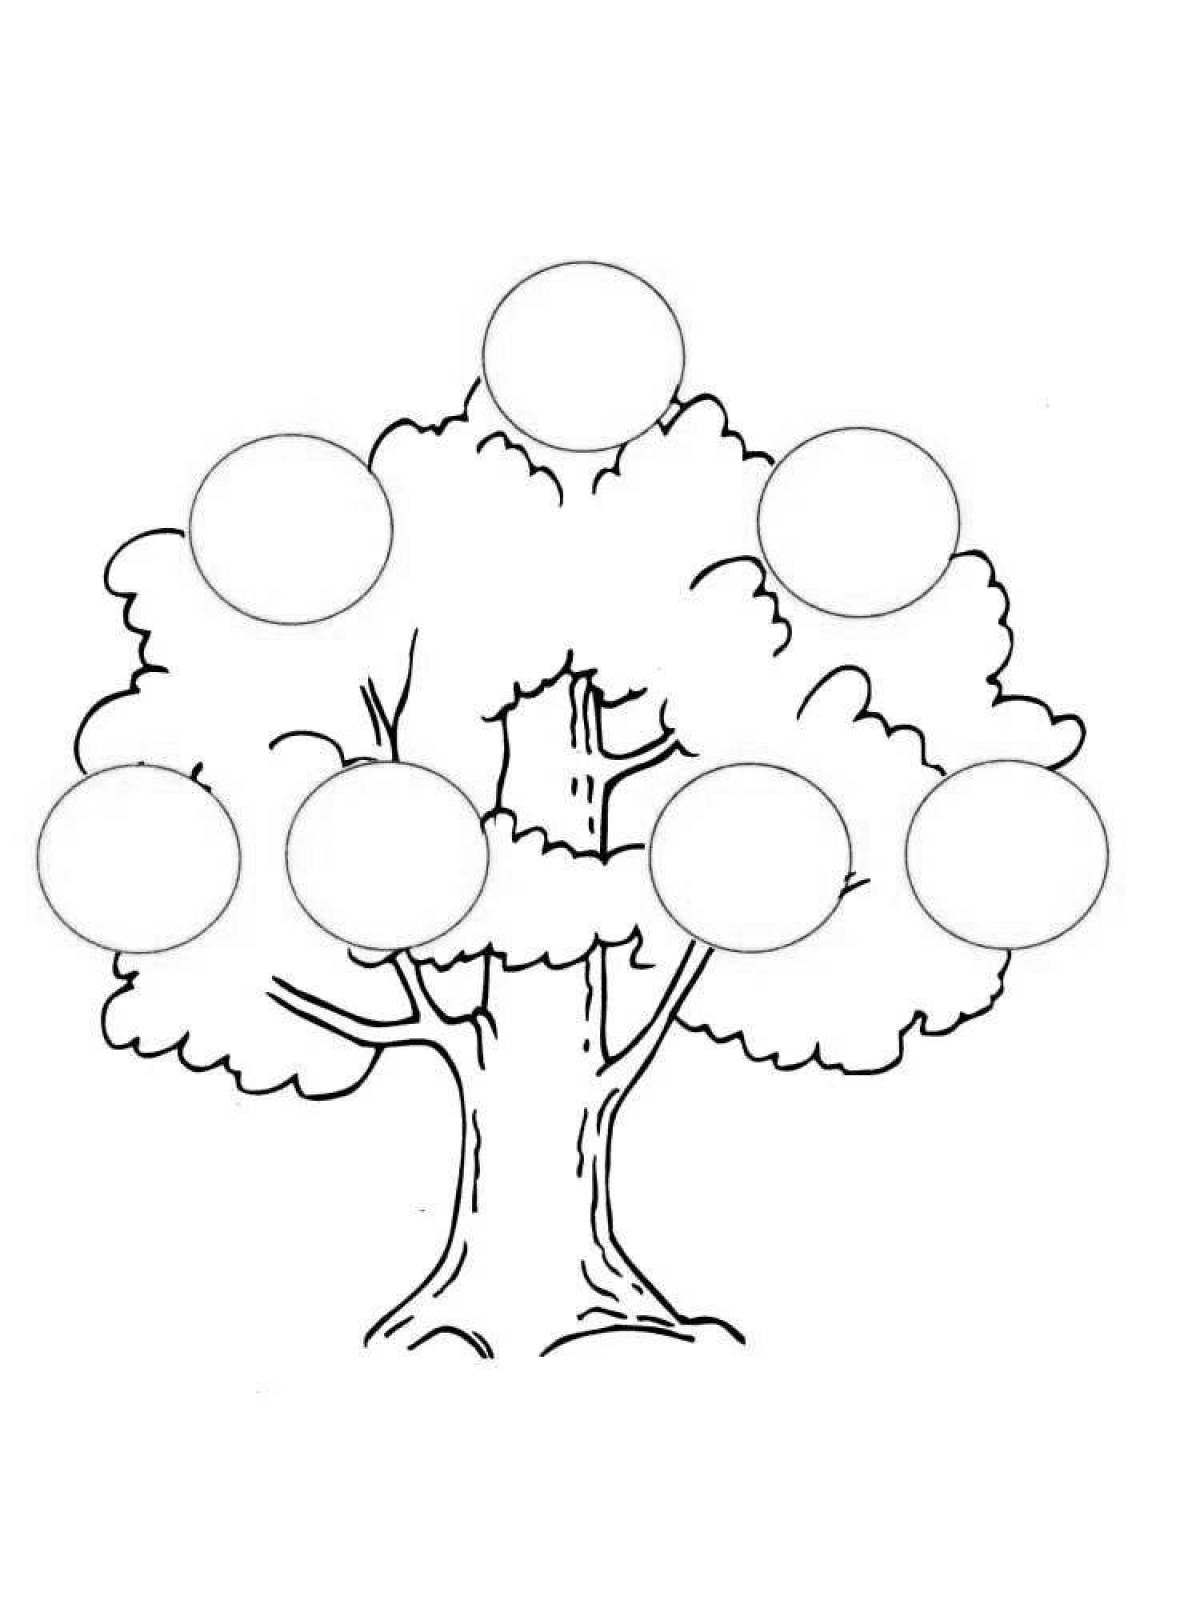 Family tree #1